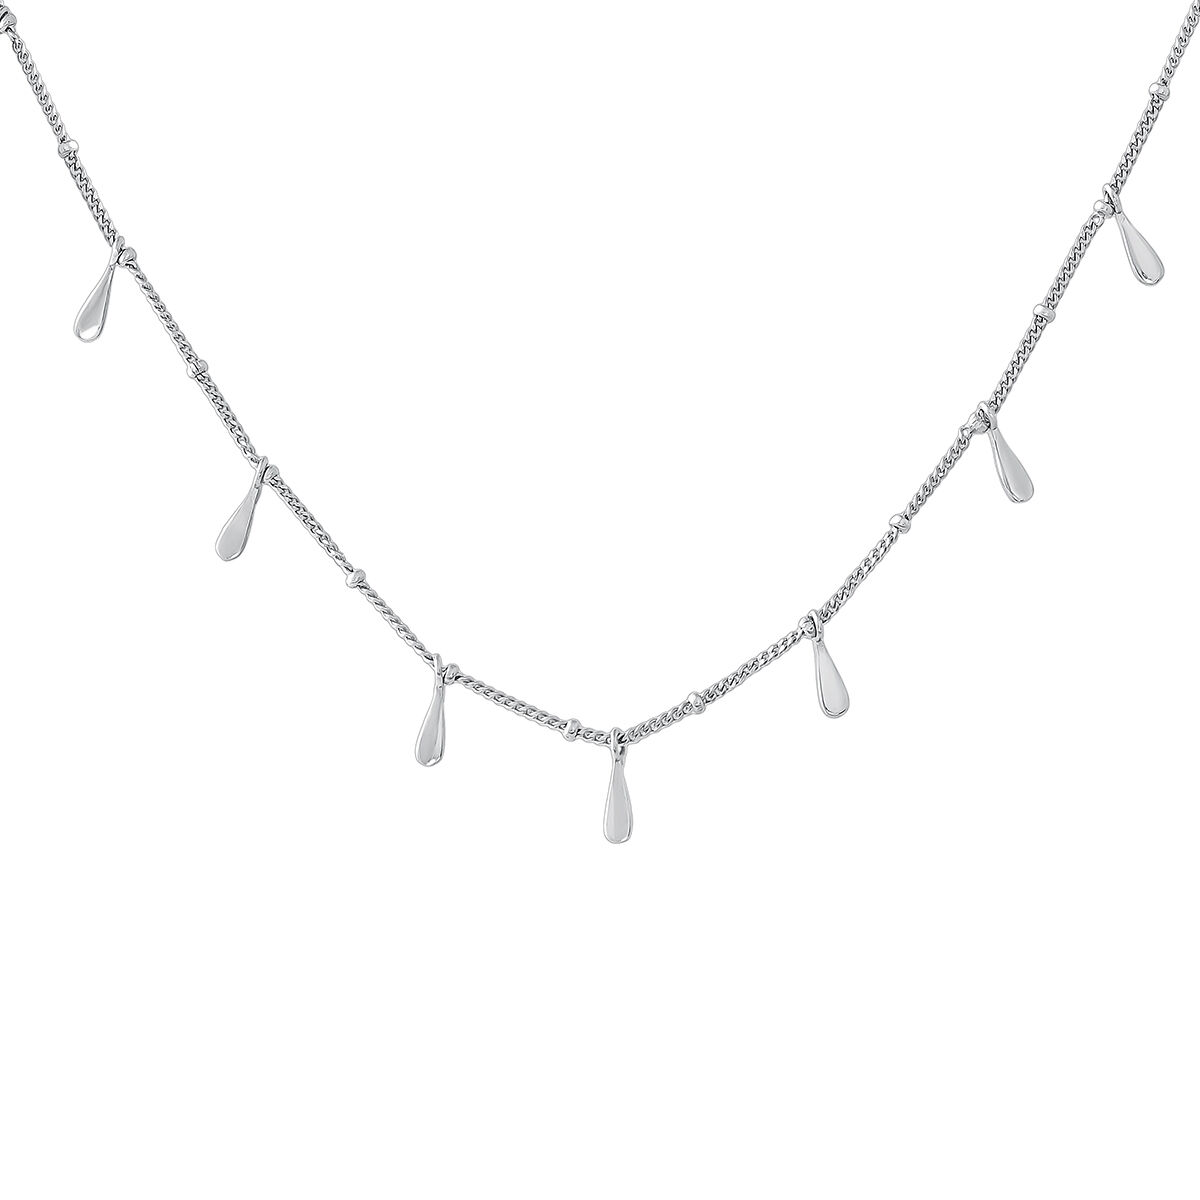 Collar motivos lágrimas plata , J04591-01, mainproduct